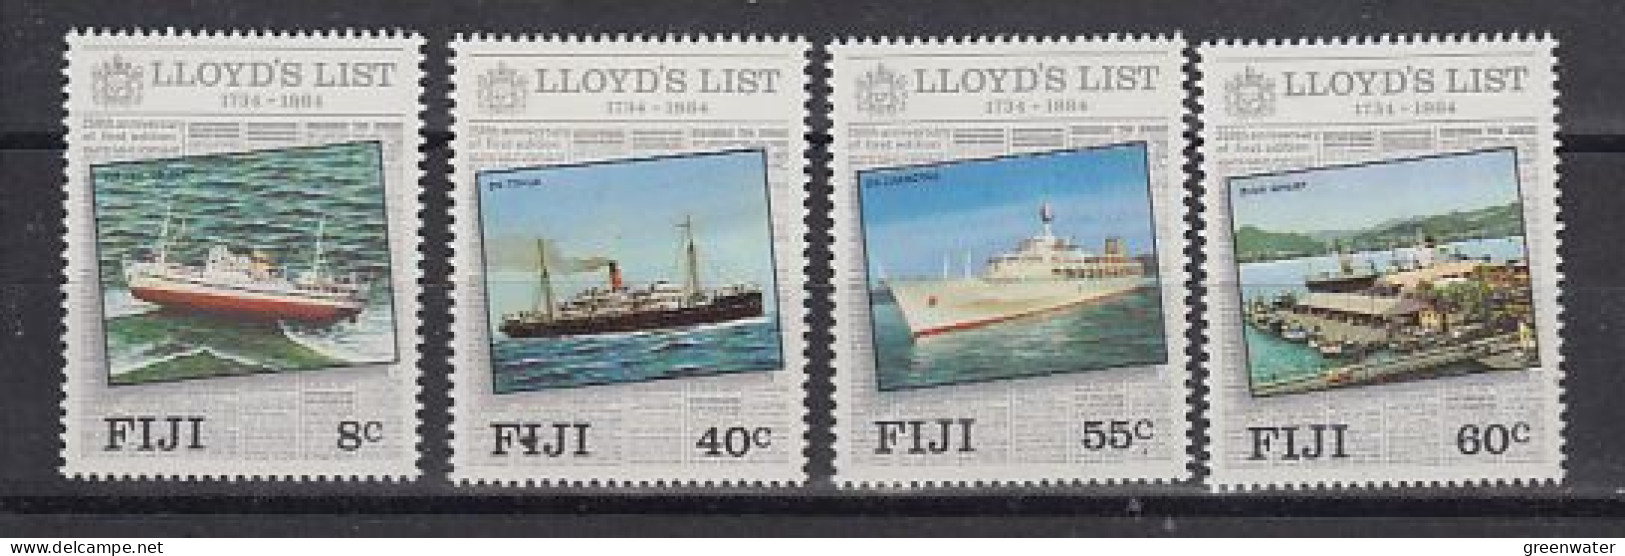 Fidji  1984 Lloyd's List 4v ** Mnh  (59831) - Fidji (1970-...)